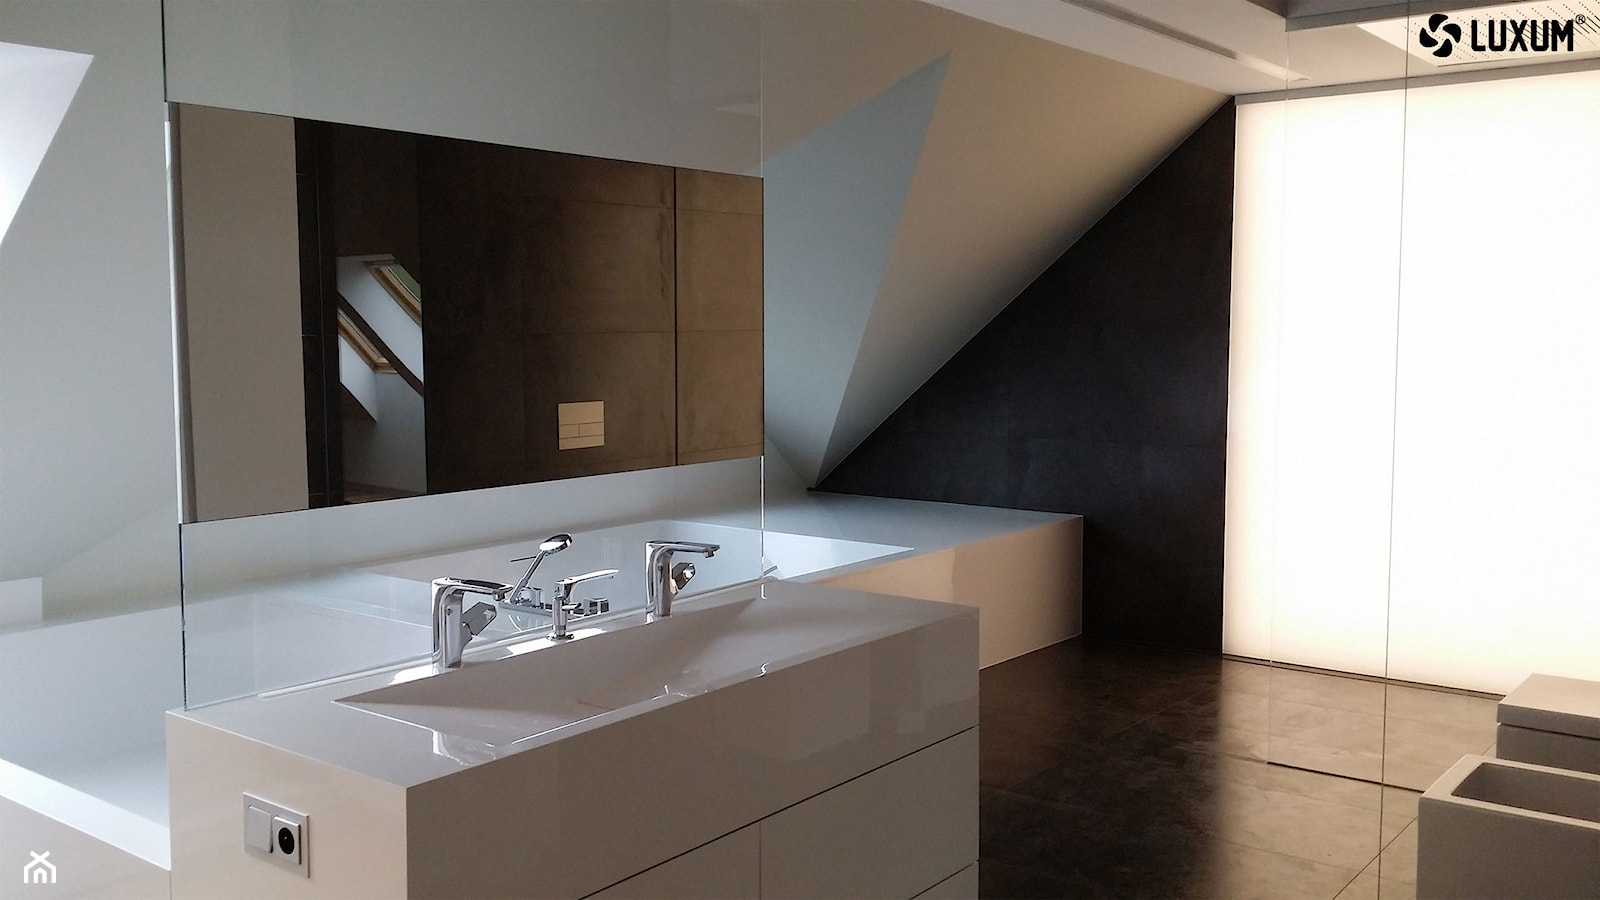 Zabudowa łazienkowa z kompozytu GFK LUXUM. - zdjęcie od Luxum - Homebook